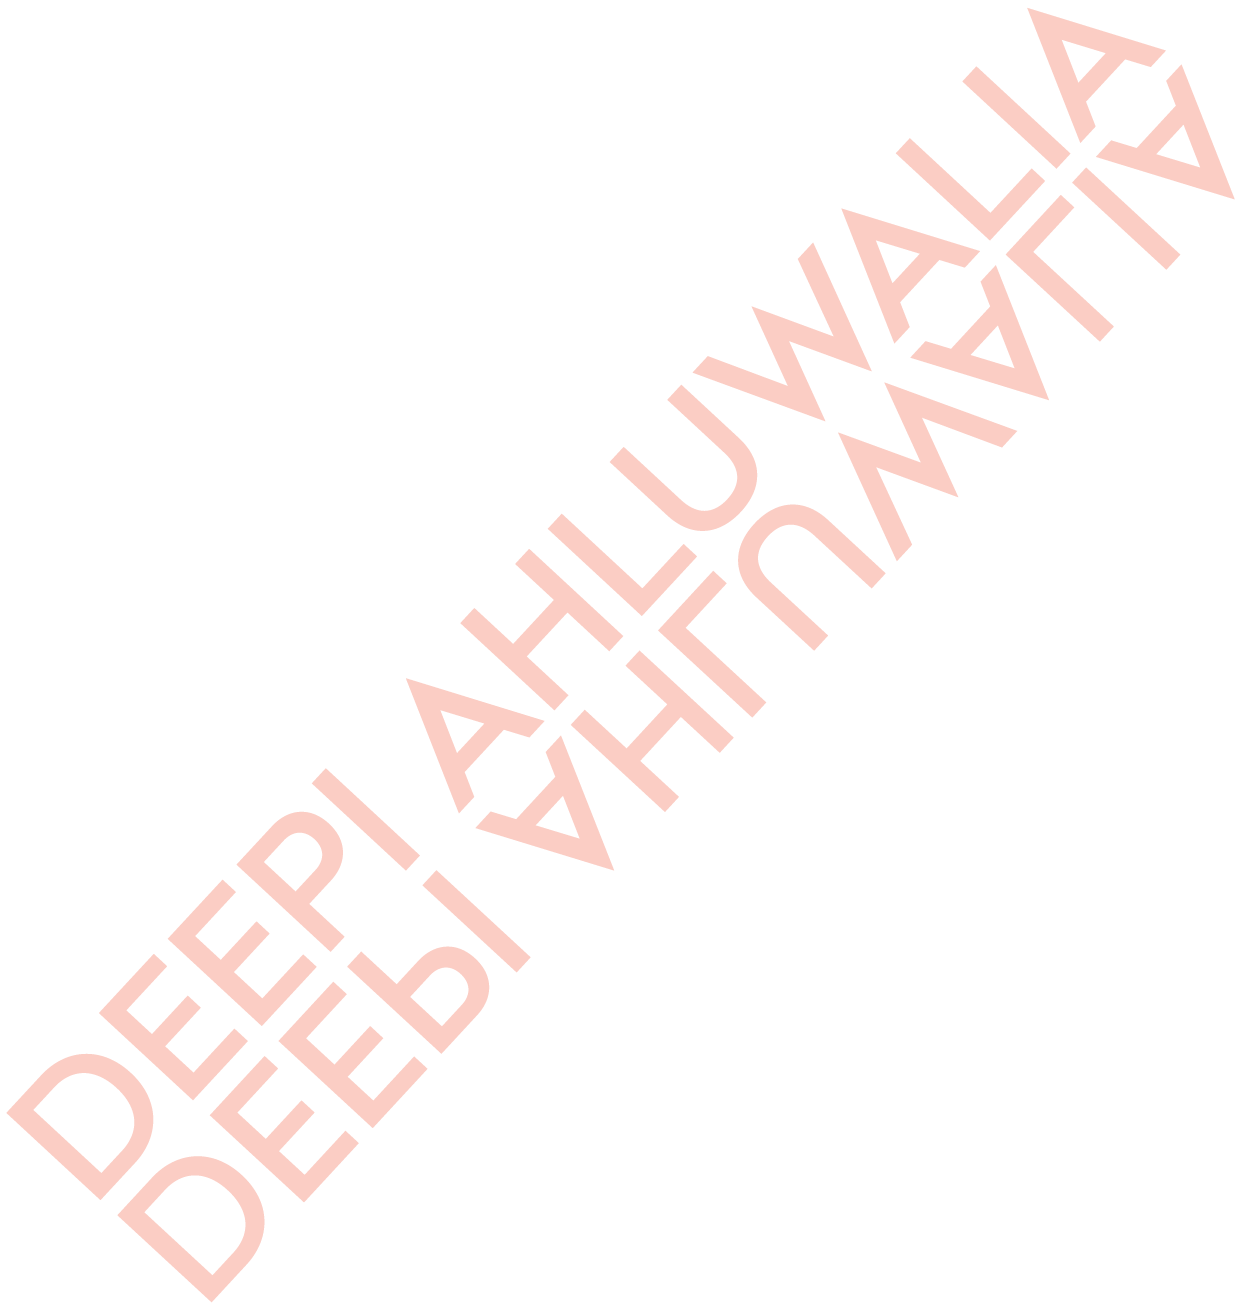 Deepi Ahluwalia